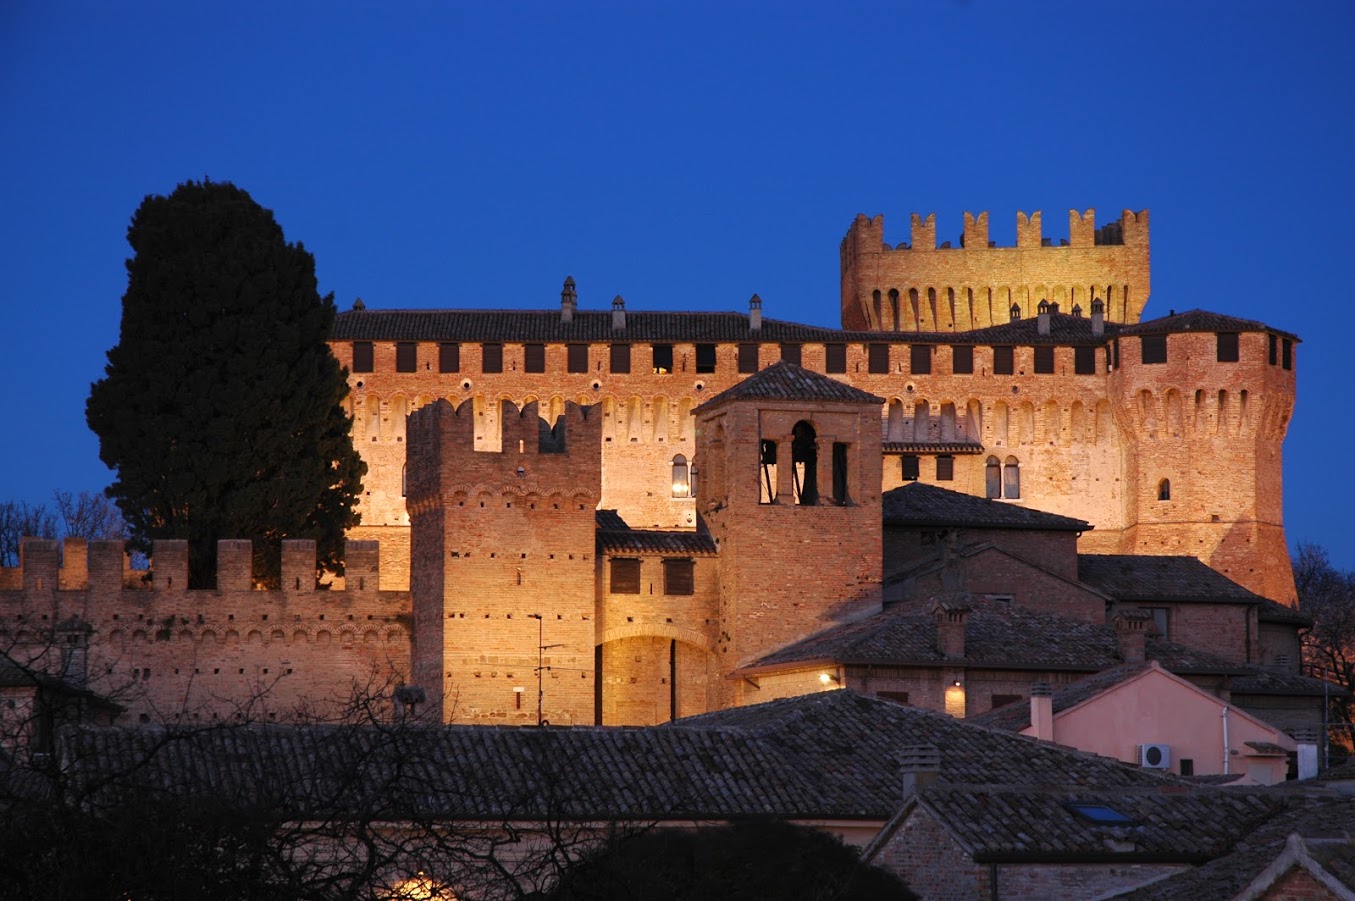 Gradara Castello Di Notte Lib Comune.jpg